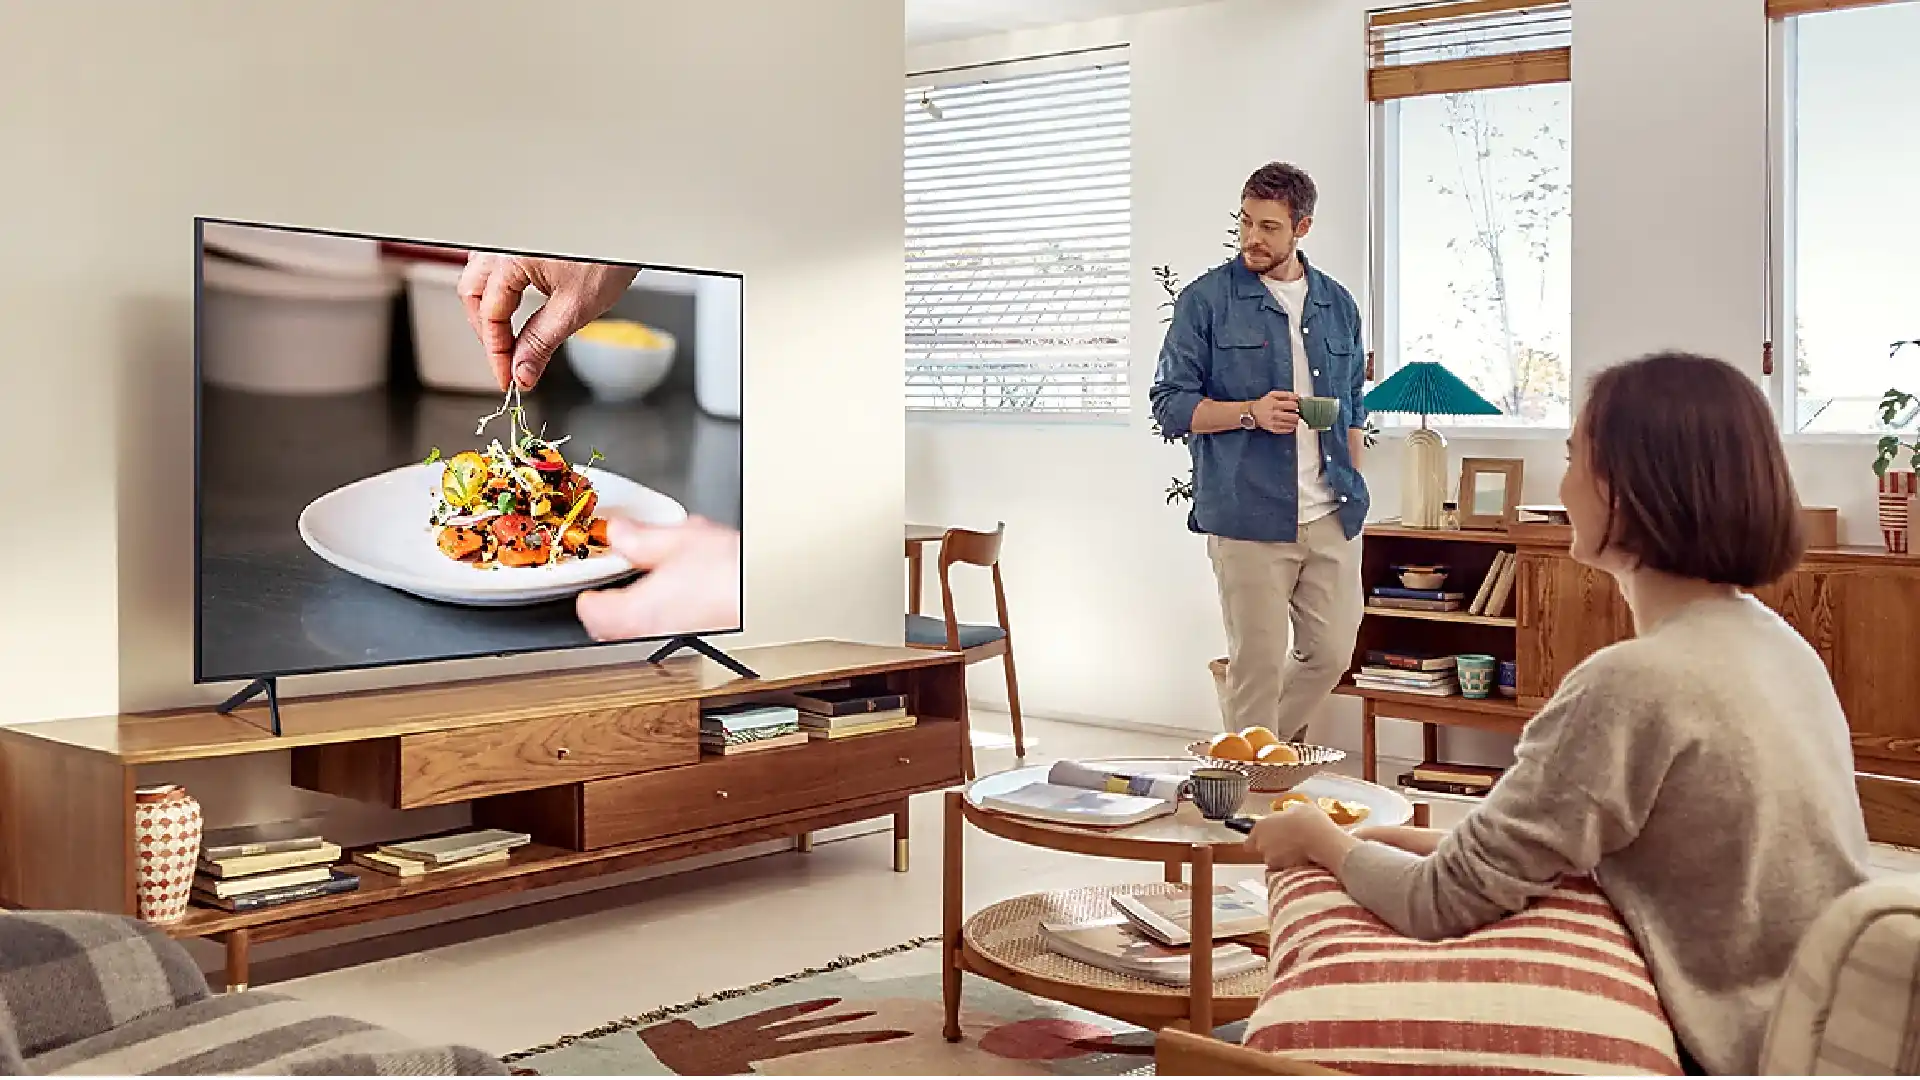 TV Samsung AU7000 sobre rack de madeira em sala de estar. Homem e mulher assistem à TV.